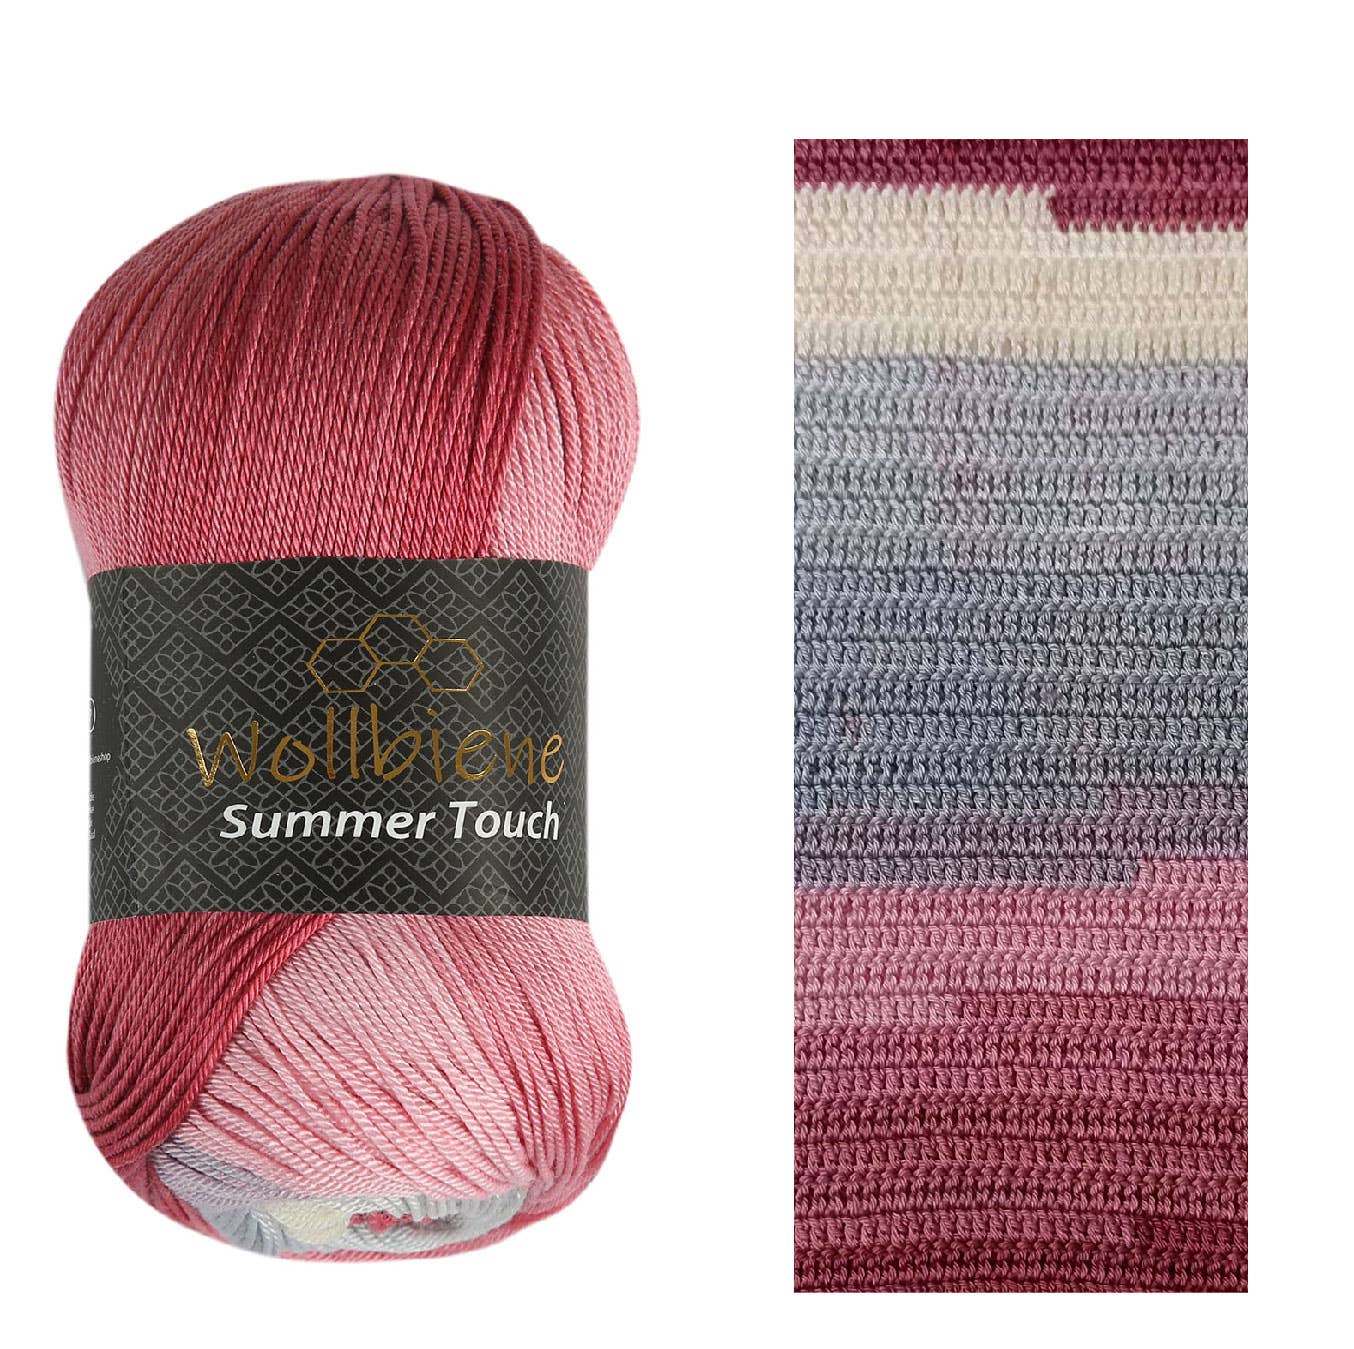 Wollbiene - Wollbiene Summer Touch Batik Farbverlaufswolle Strickwolle